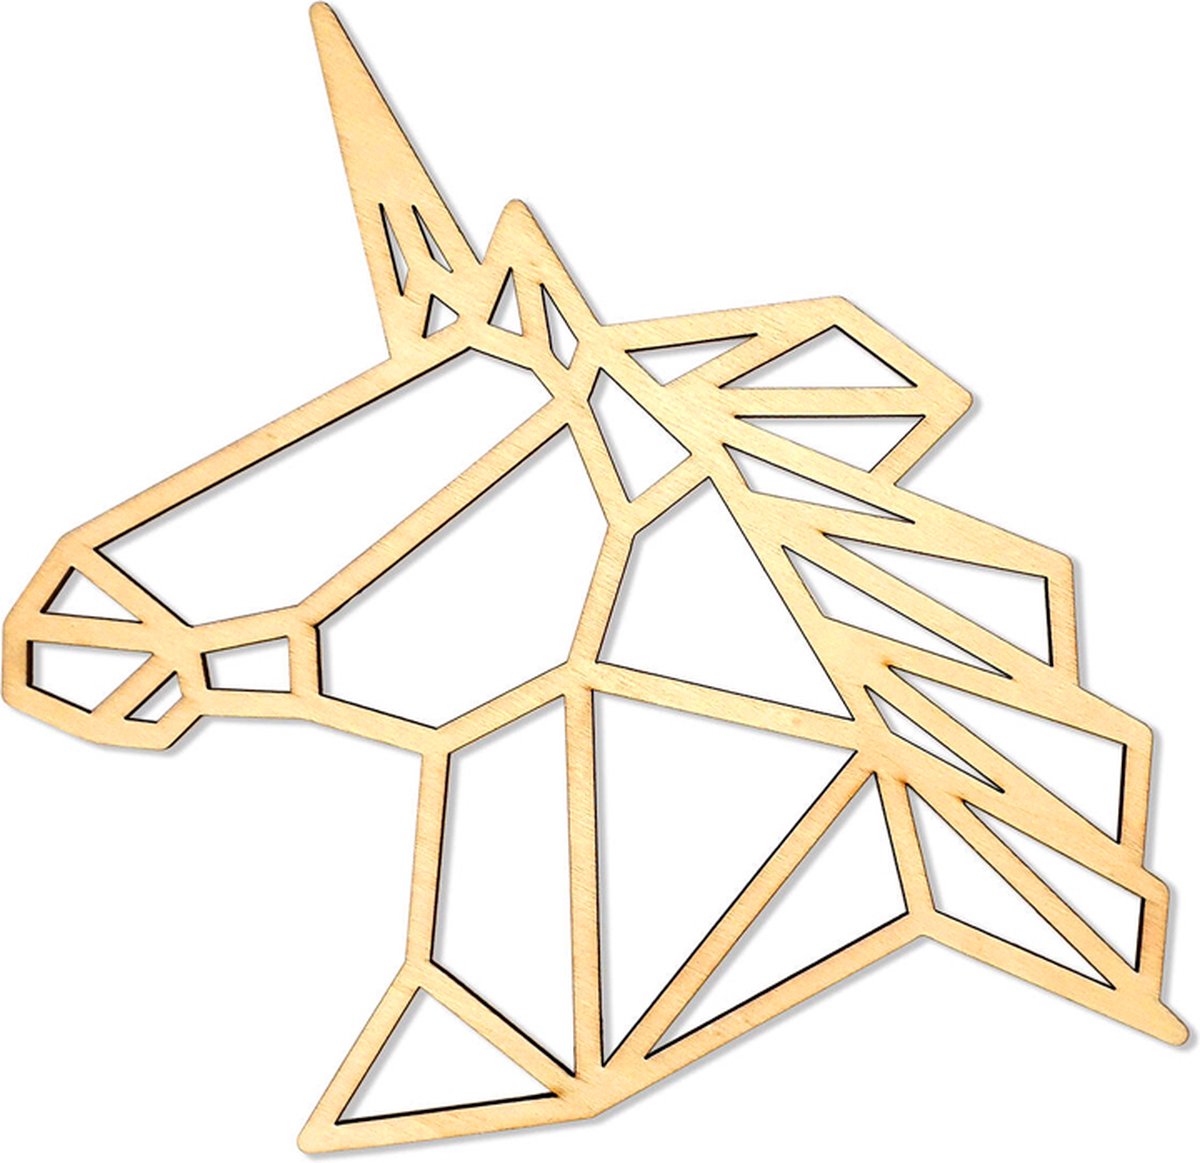 Eenhoorn/Unicorn Geometrische Lijnen - DIY-Deco & Hobby/Creatief - Duurzaam & Onbehandeld Hout - 19.4x23.6x0.3cm